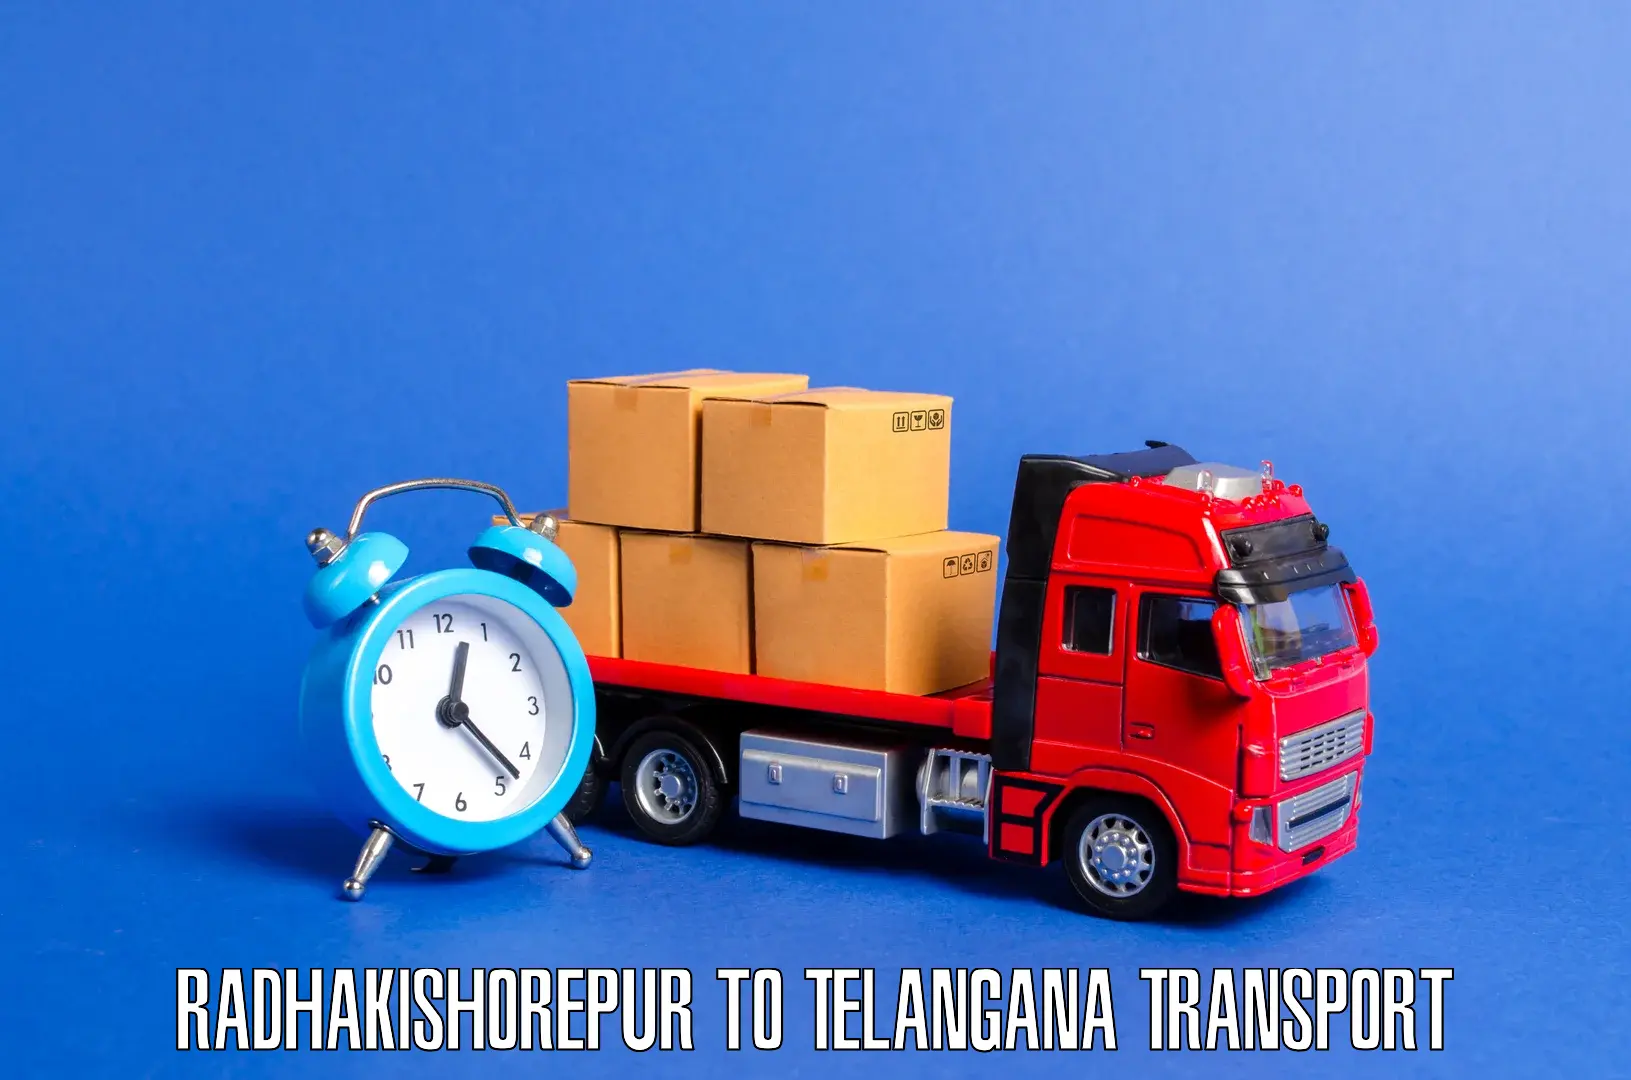 Transport in sharing Radhakishorepur to Kaghaznagar